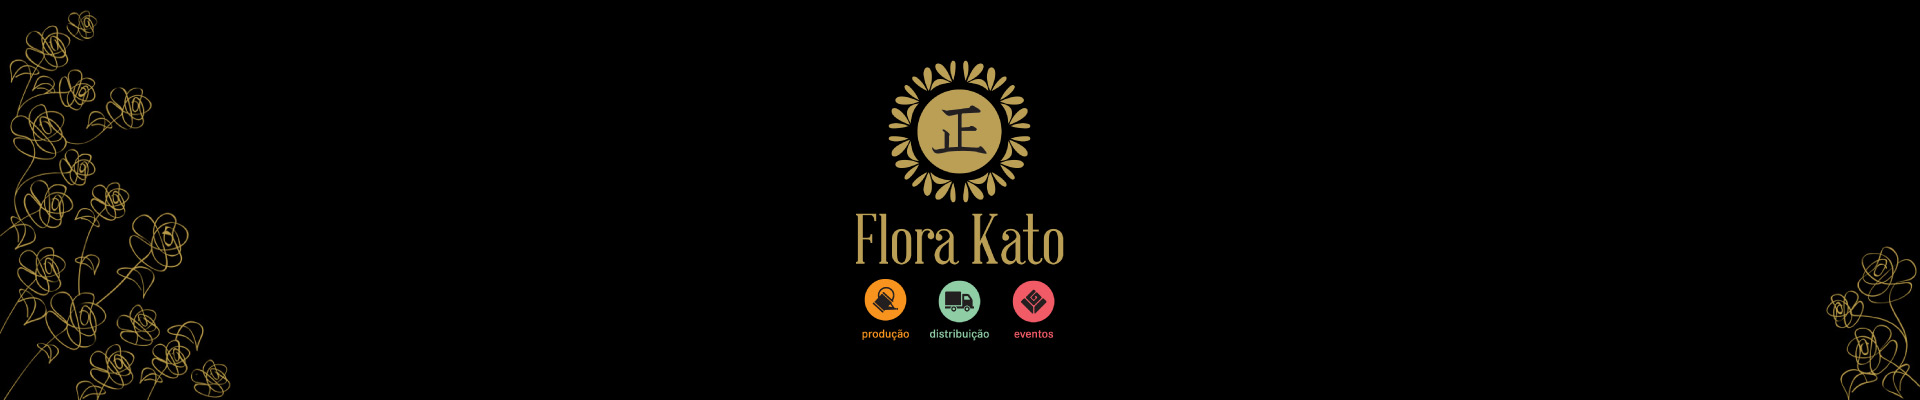 Flora Kato Eventos - Decoração de Casamentos